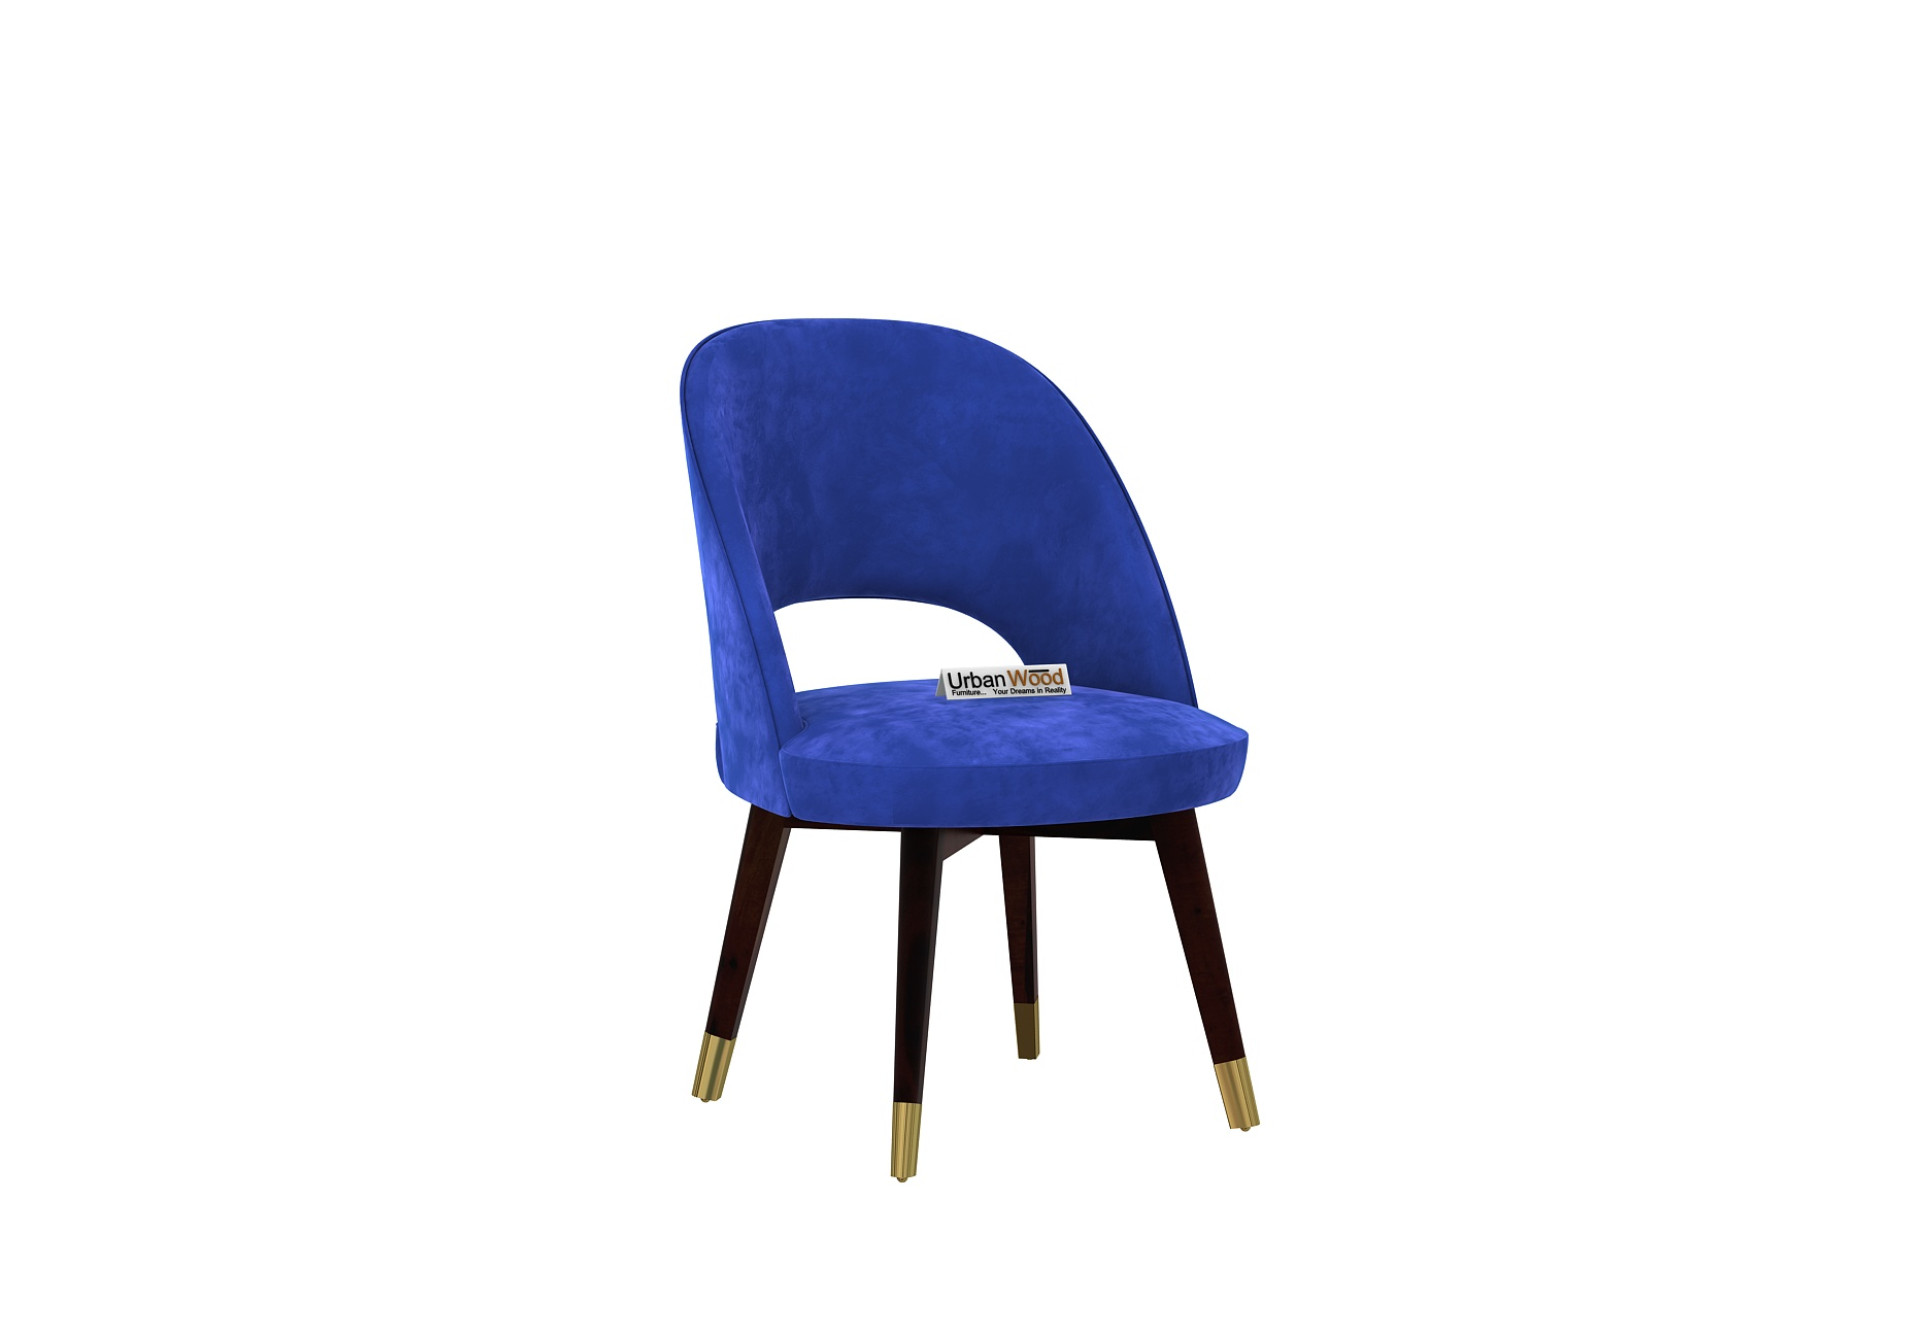 Luna Carved Back Dining Chair - Set Of 2 (Velvet, Sapphire Blue)